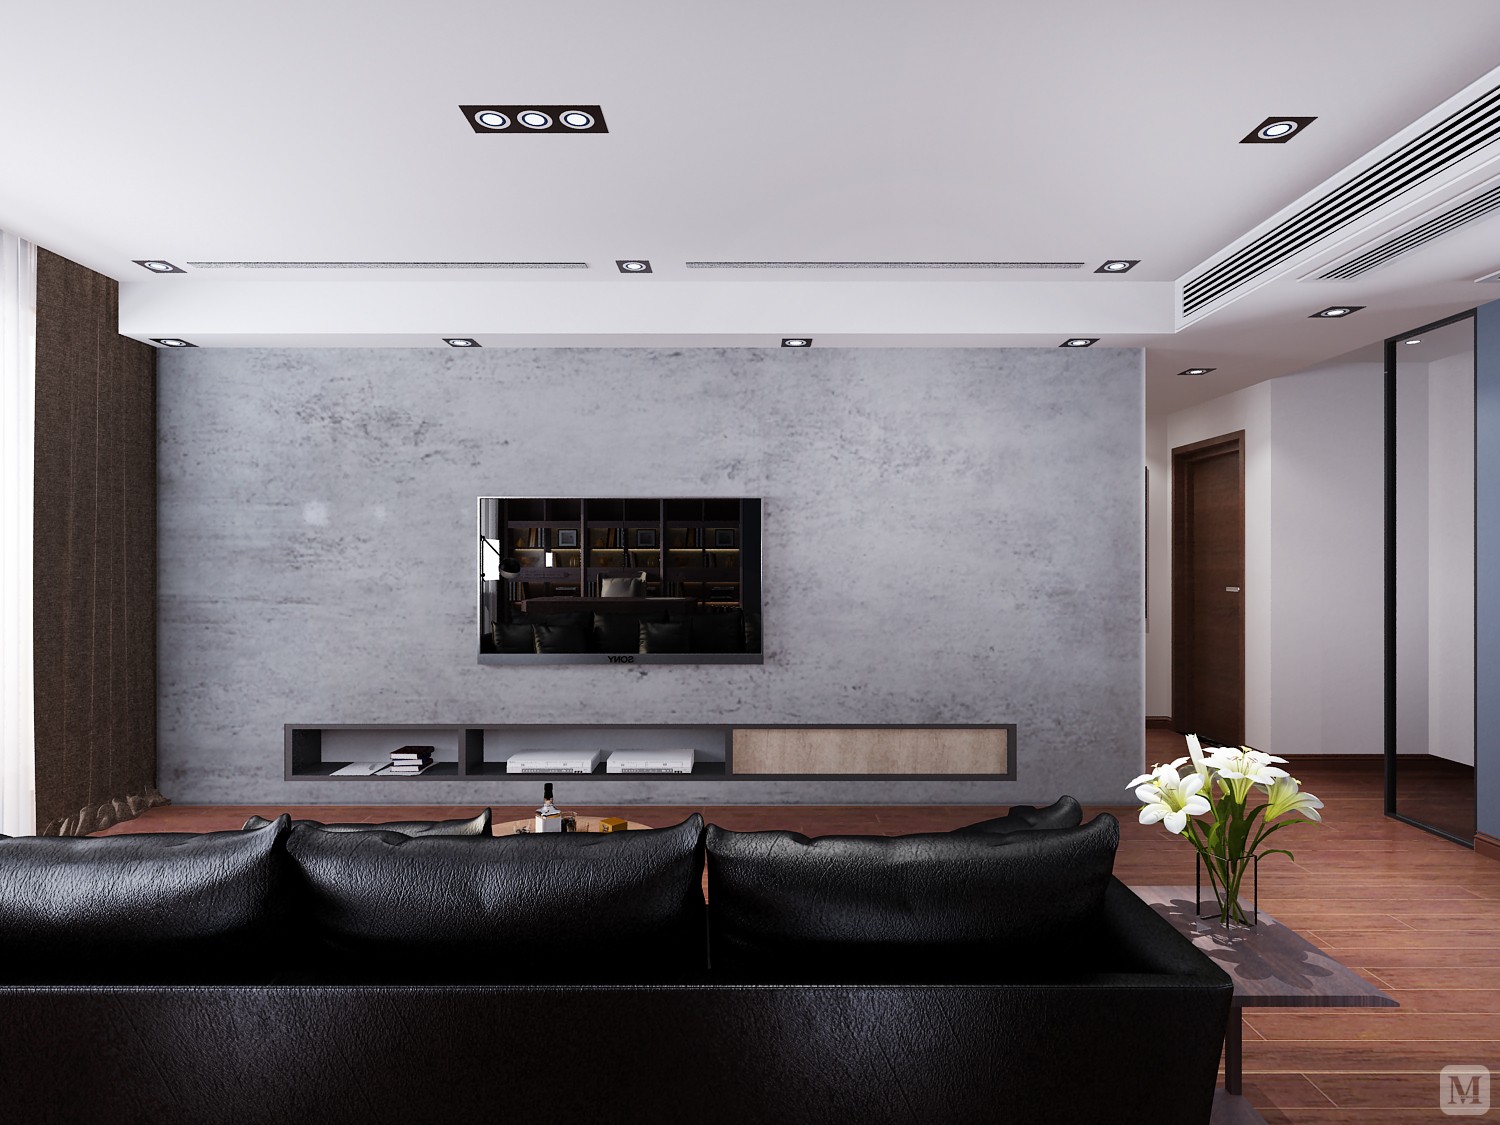 电视与电视柜嵌入电视背景墙墙体内，黑色的柜体配合大面积的灰色墙体，简洁时尚。这样背景墙再配上一个设计简单的黑色皮质宽位沙发，低调的贵气感体现居者不俗的生活品位。